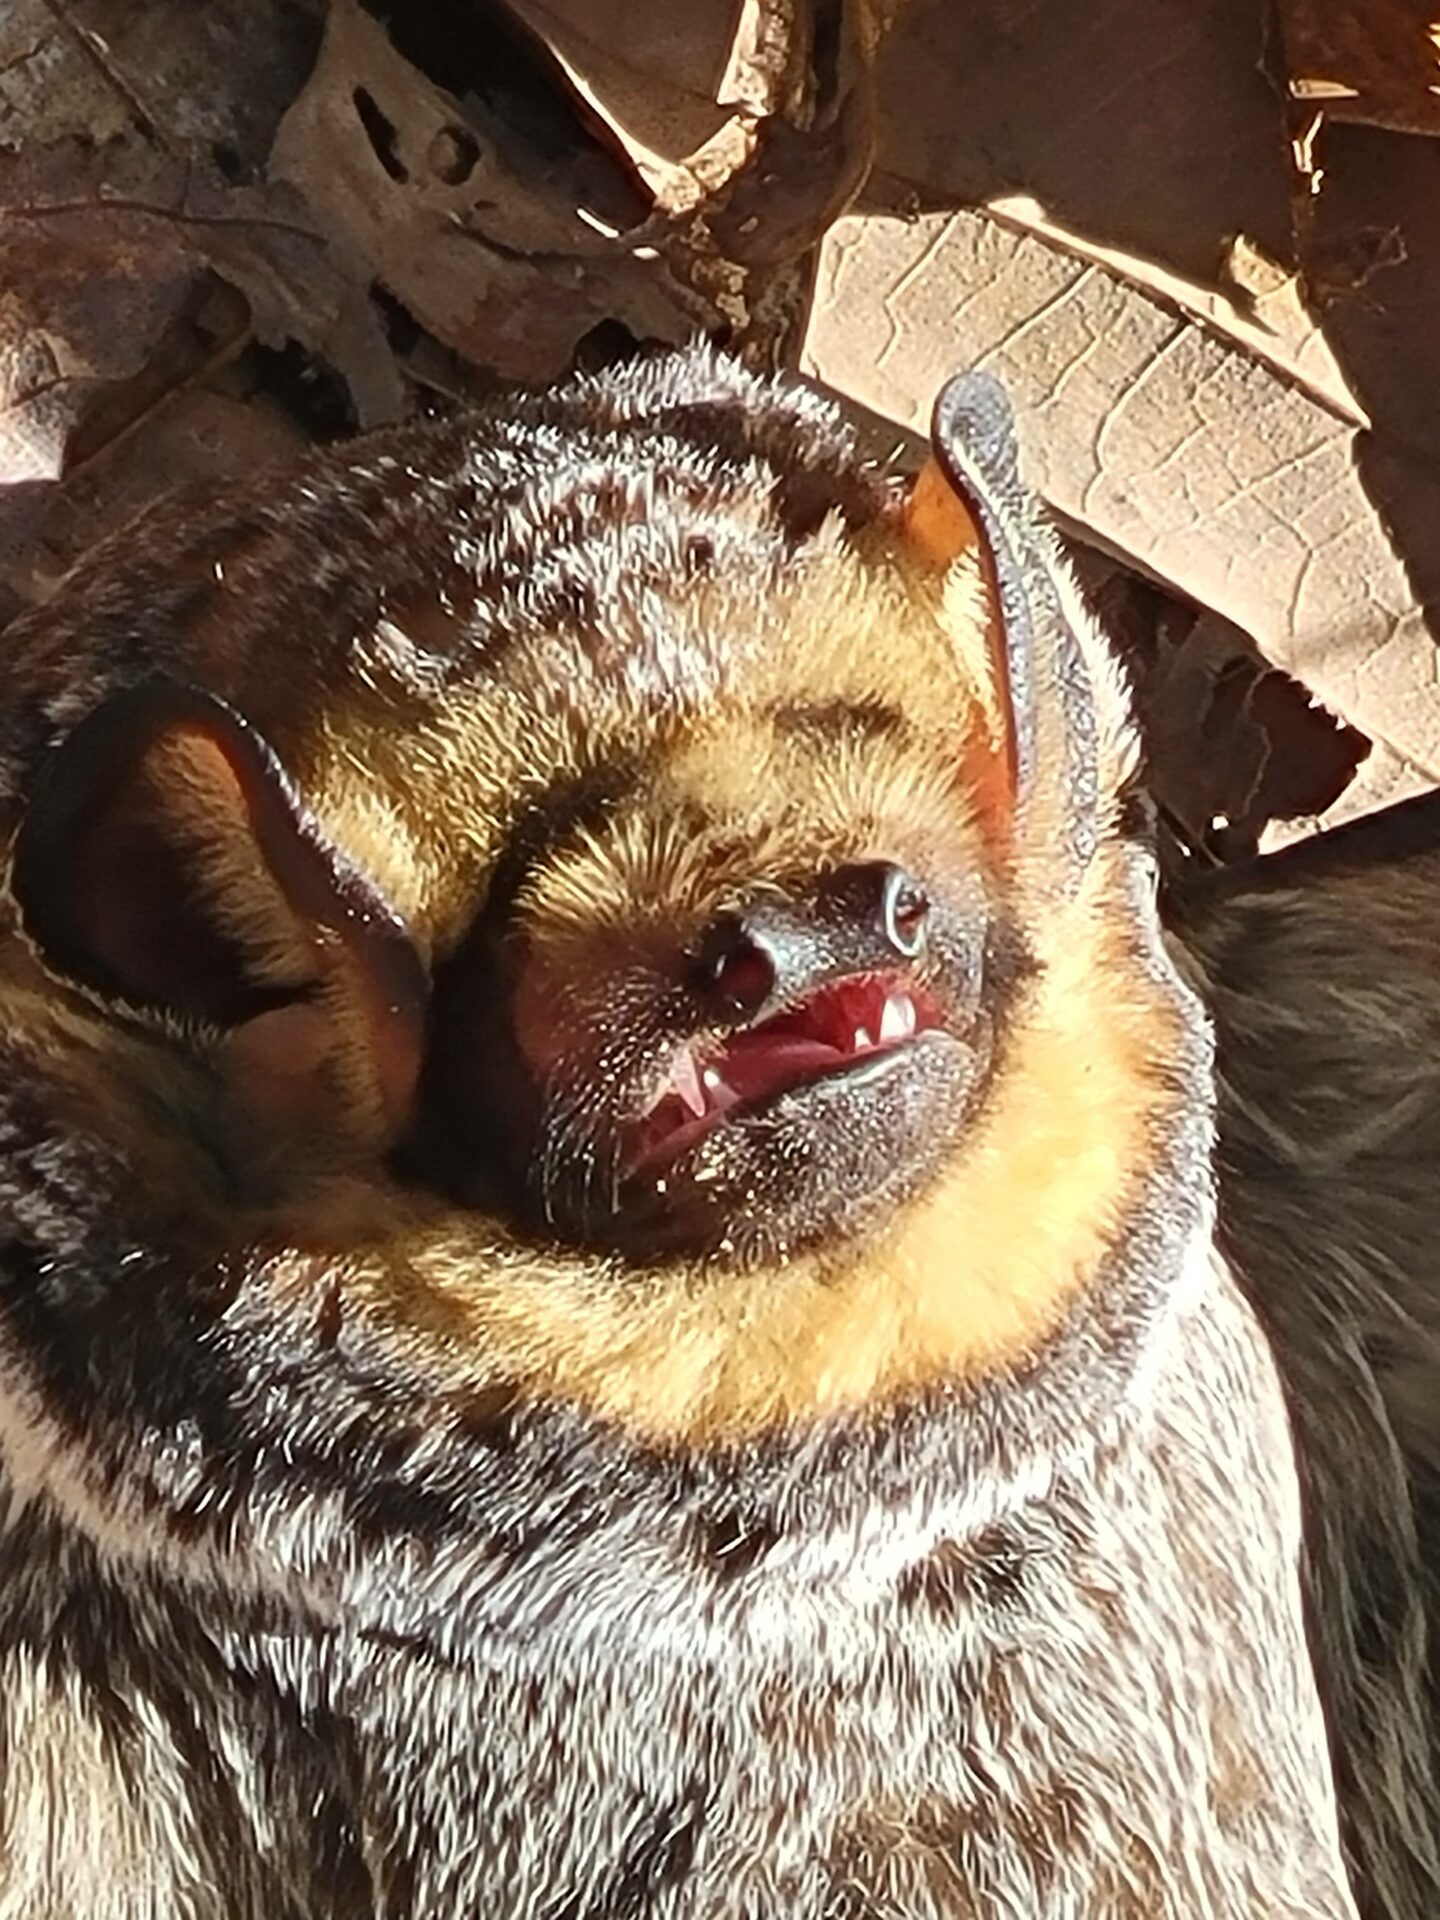 Hoary bat close-up